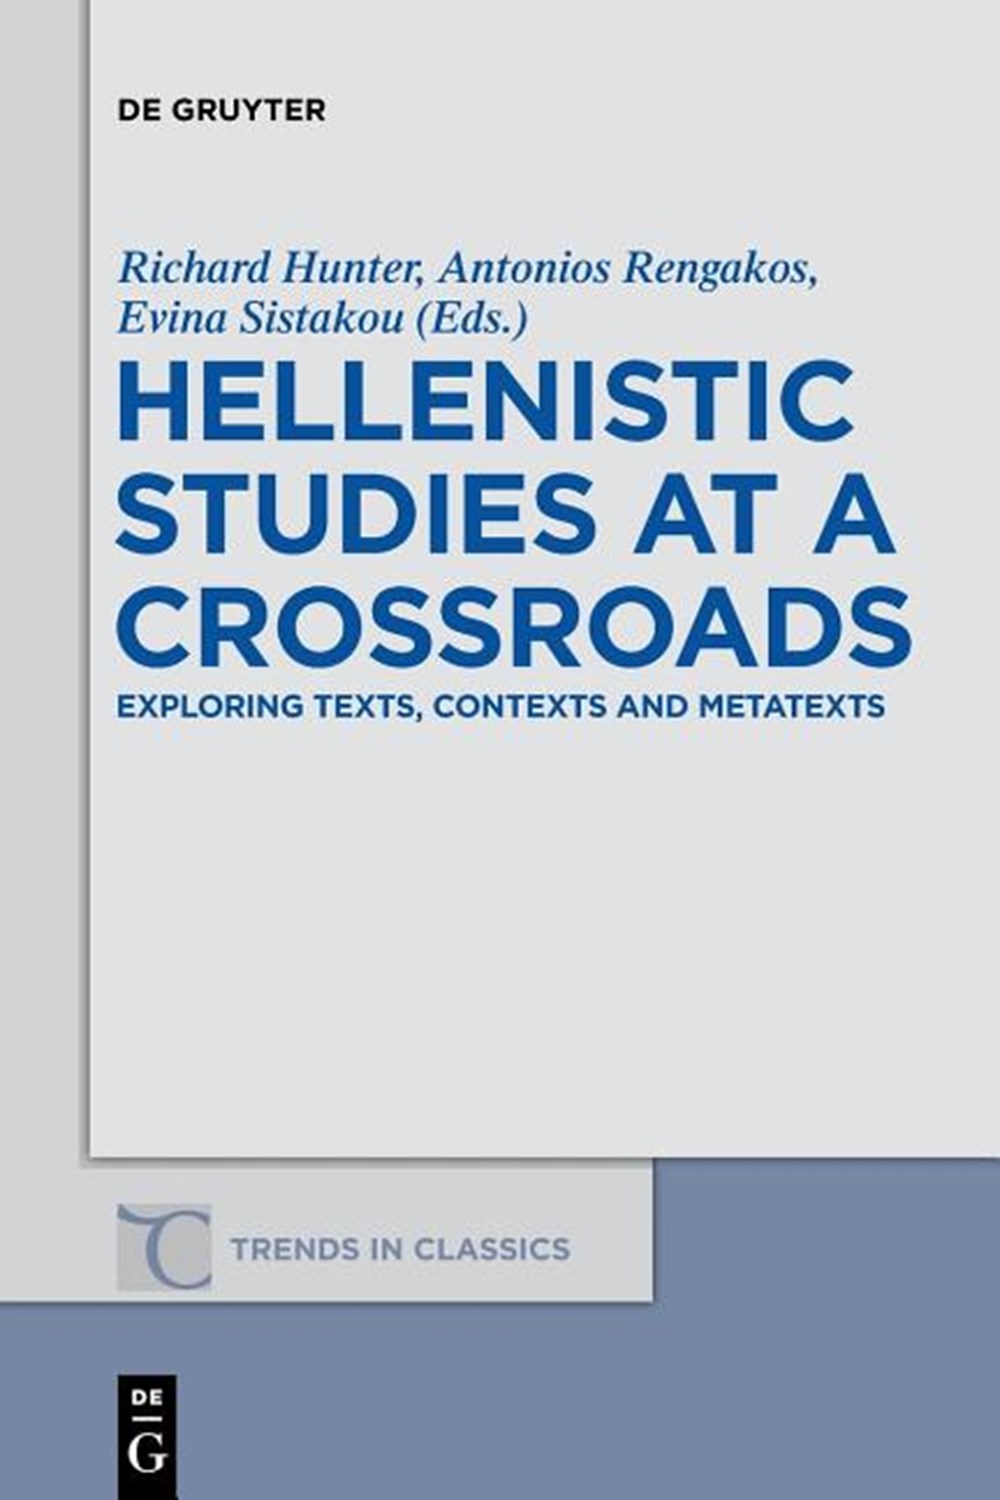 Hellenistic Studies at a Crossroads: Exploring Texts, Contexts and Metatexts